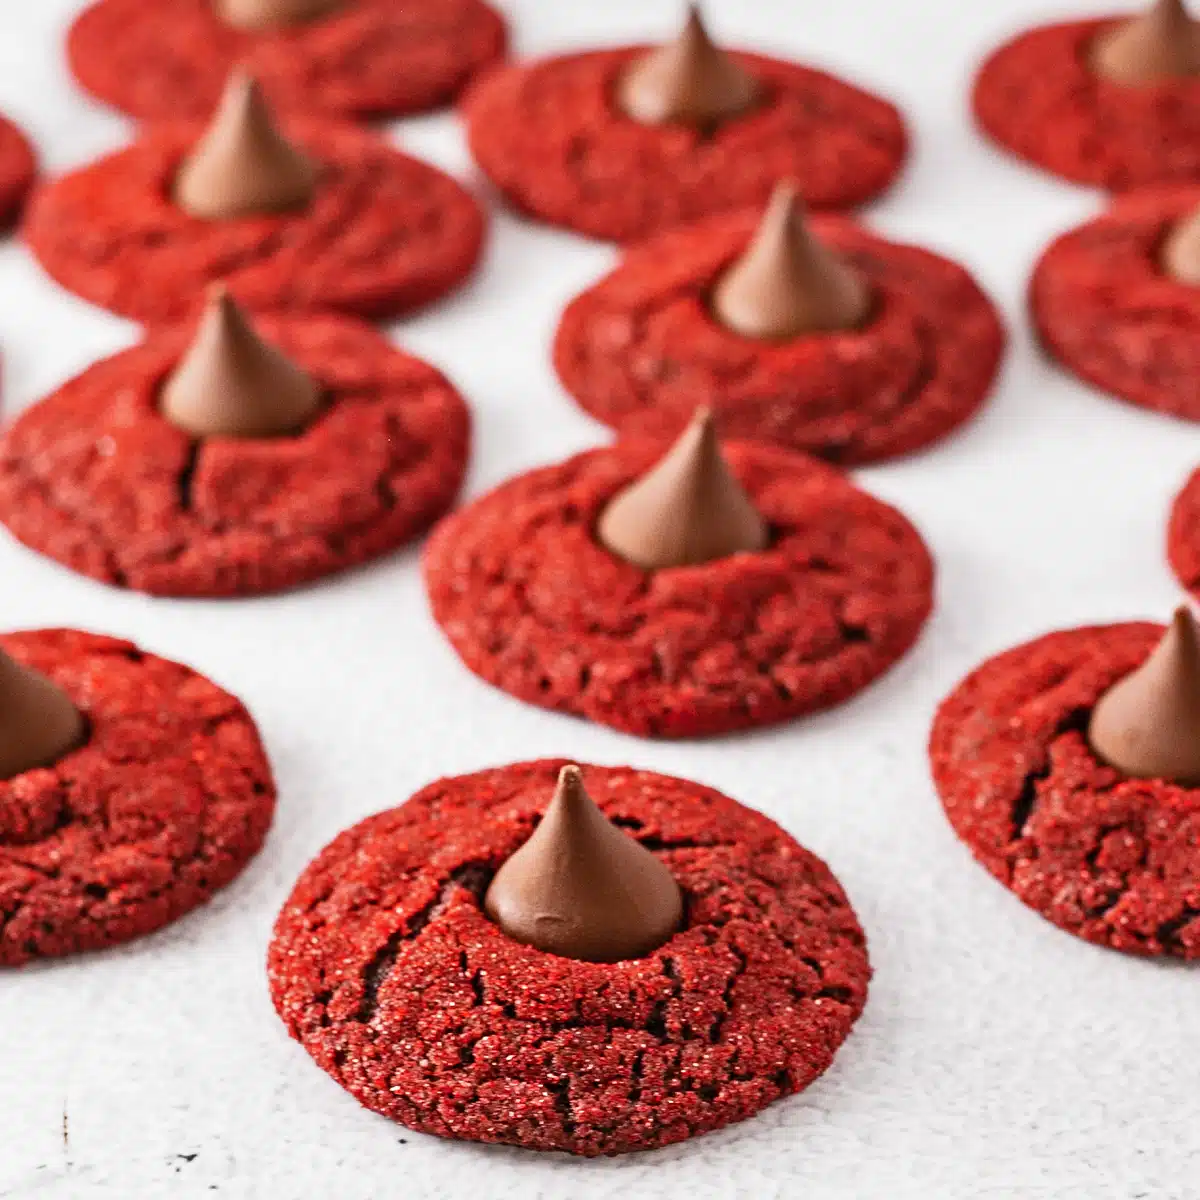 Nejlepší sušenky z červených sametových květů s červeným brusným cukrem a doplněné čokoládovými bonbony Hershey's Kisses.